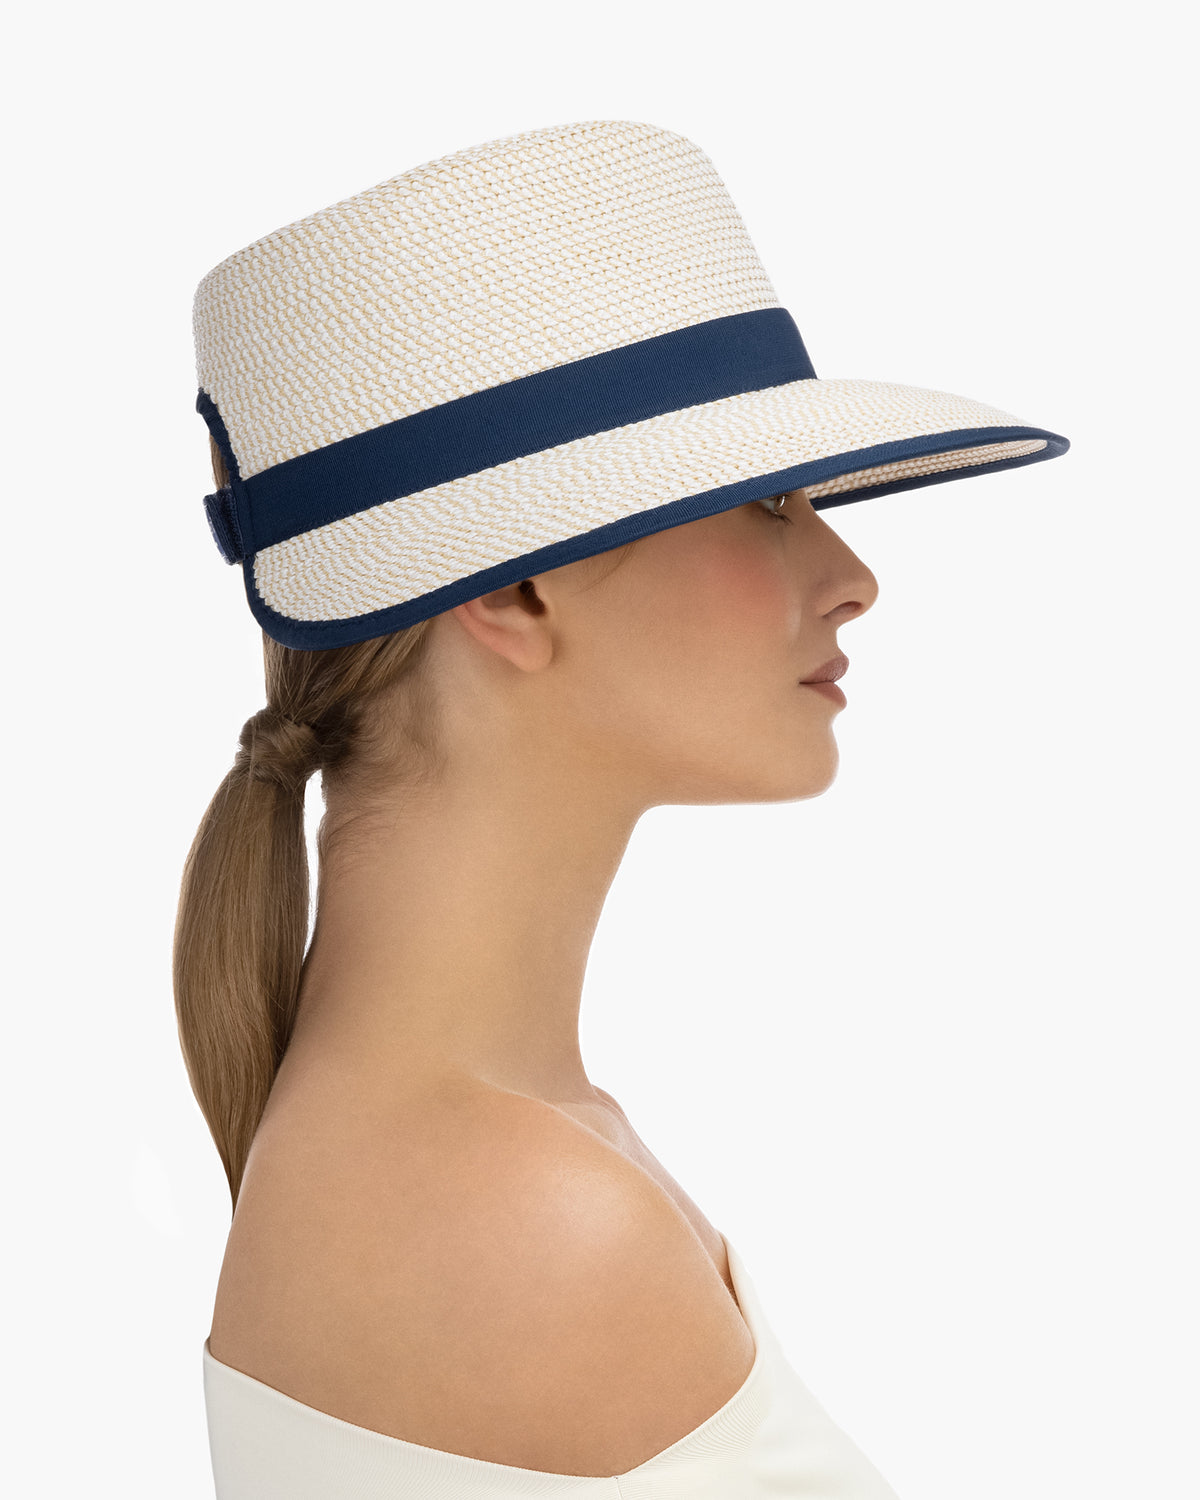 Suncrest Visor Hat, Women's Straw Visor